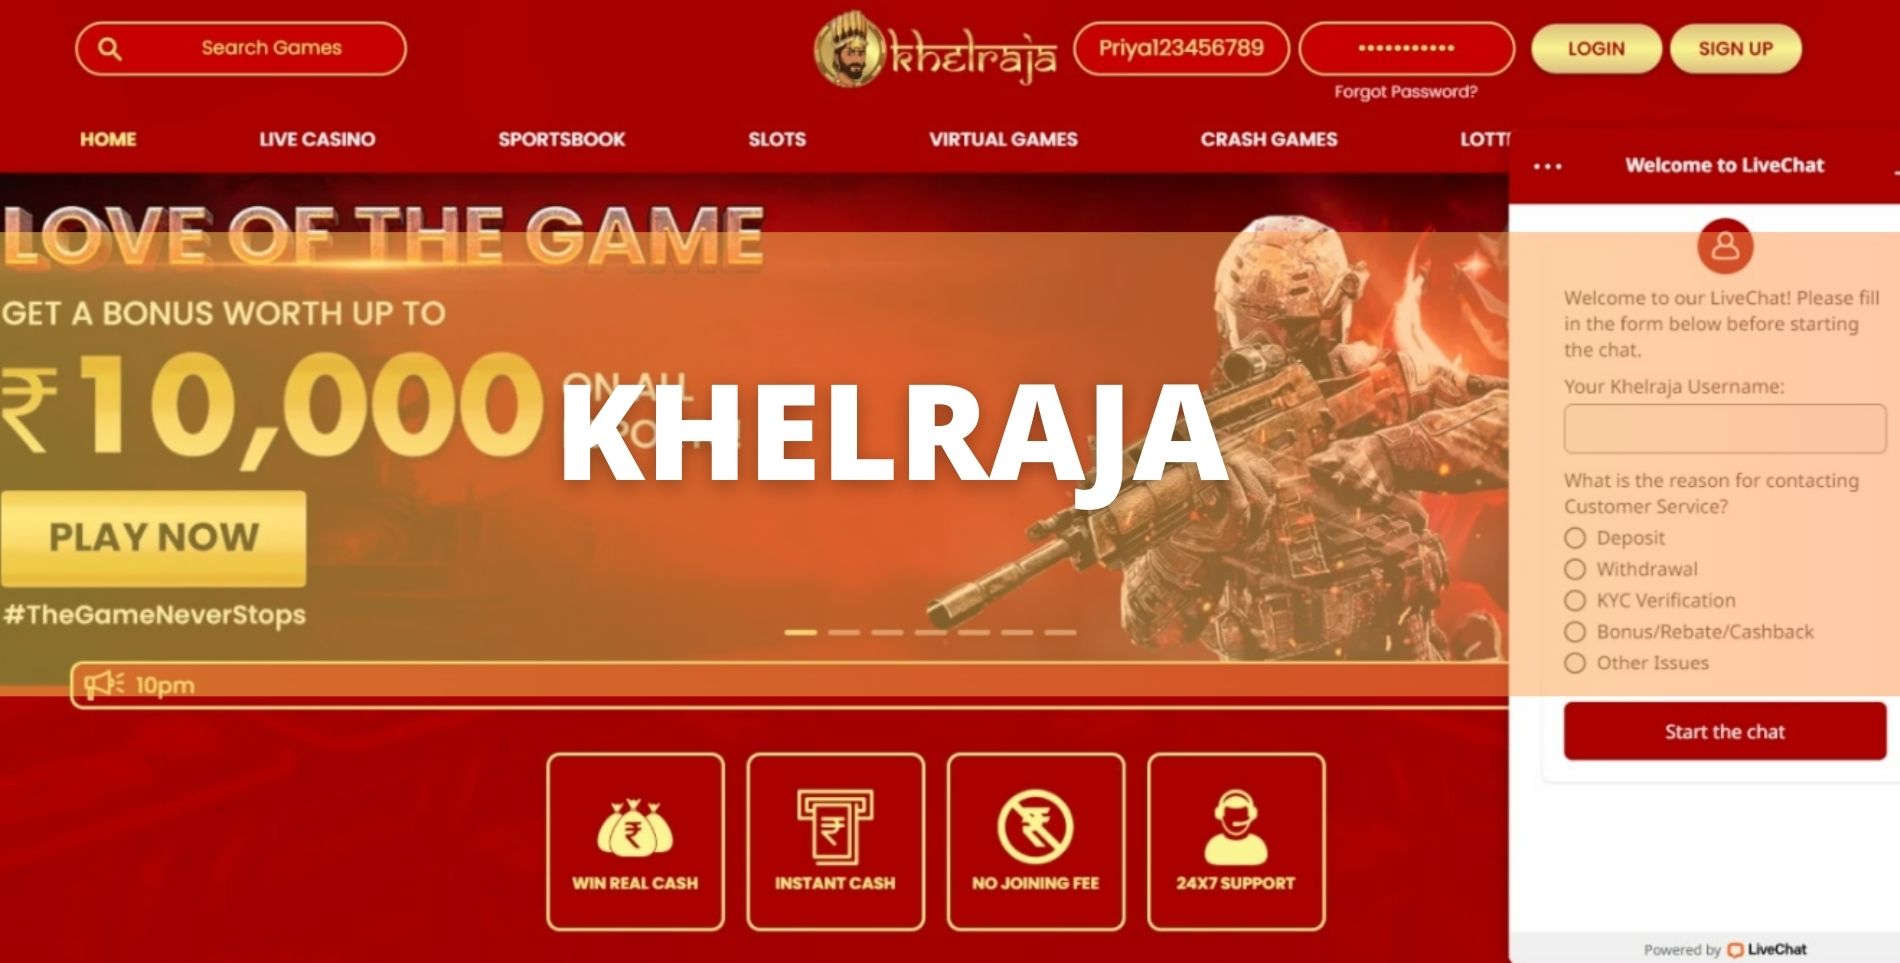 Khelraja gambling site guide